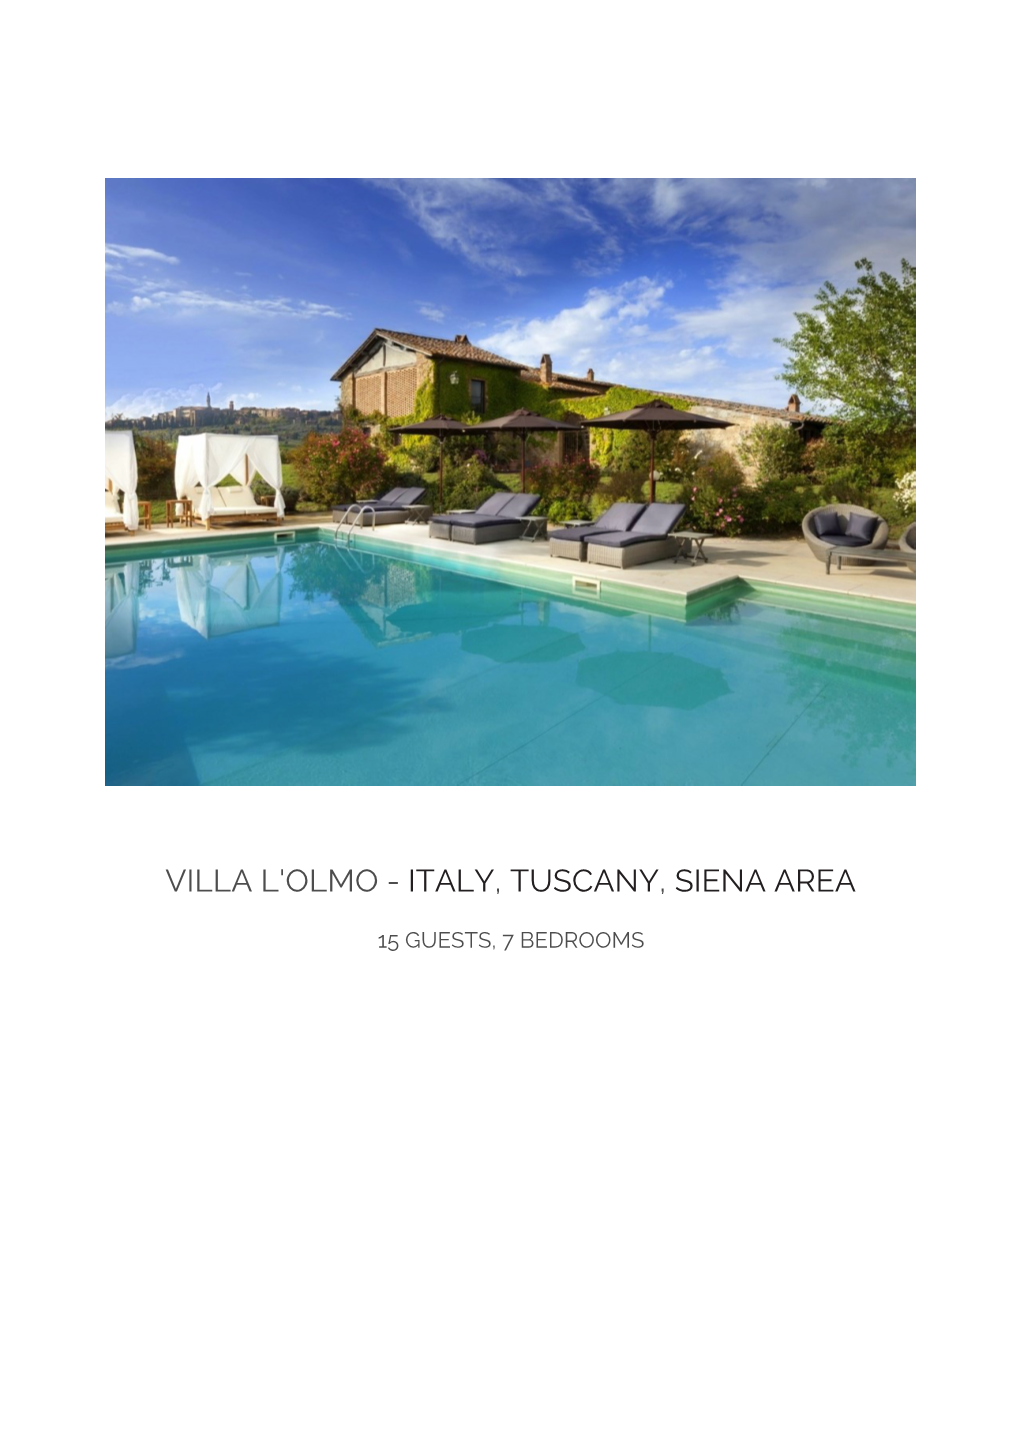 Villa L'olmo - Italy, Tuscany, Siena Area